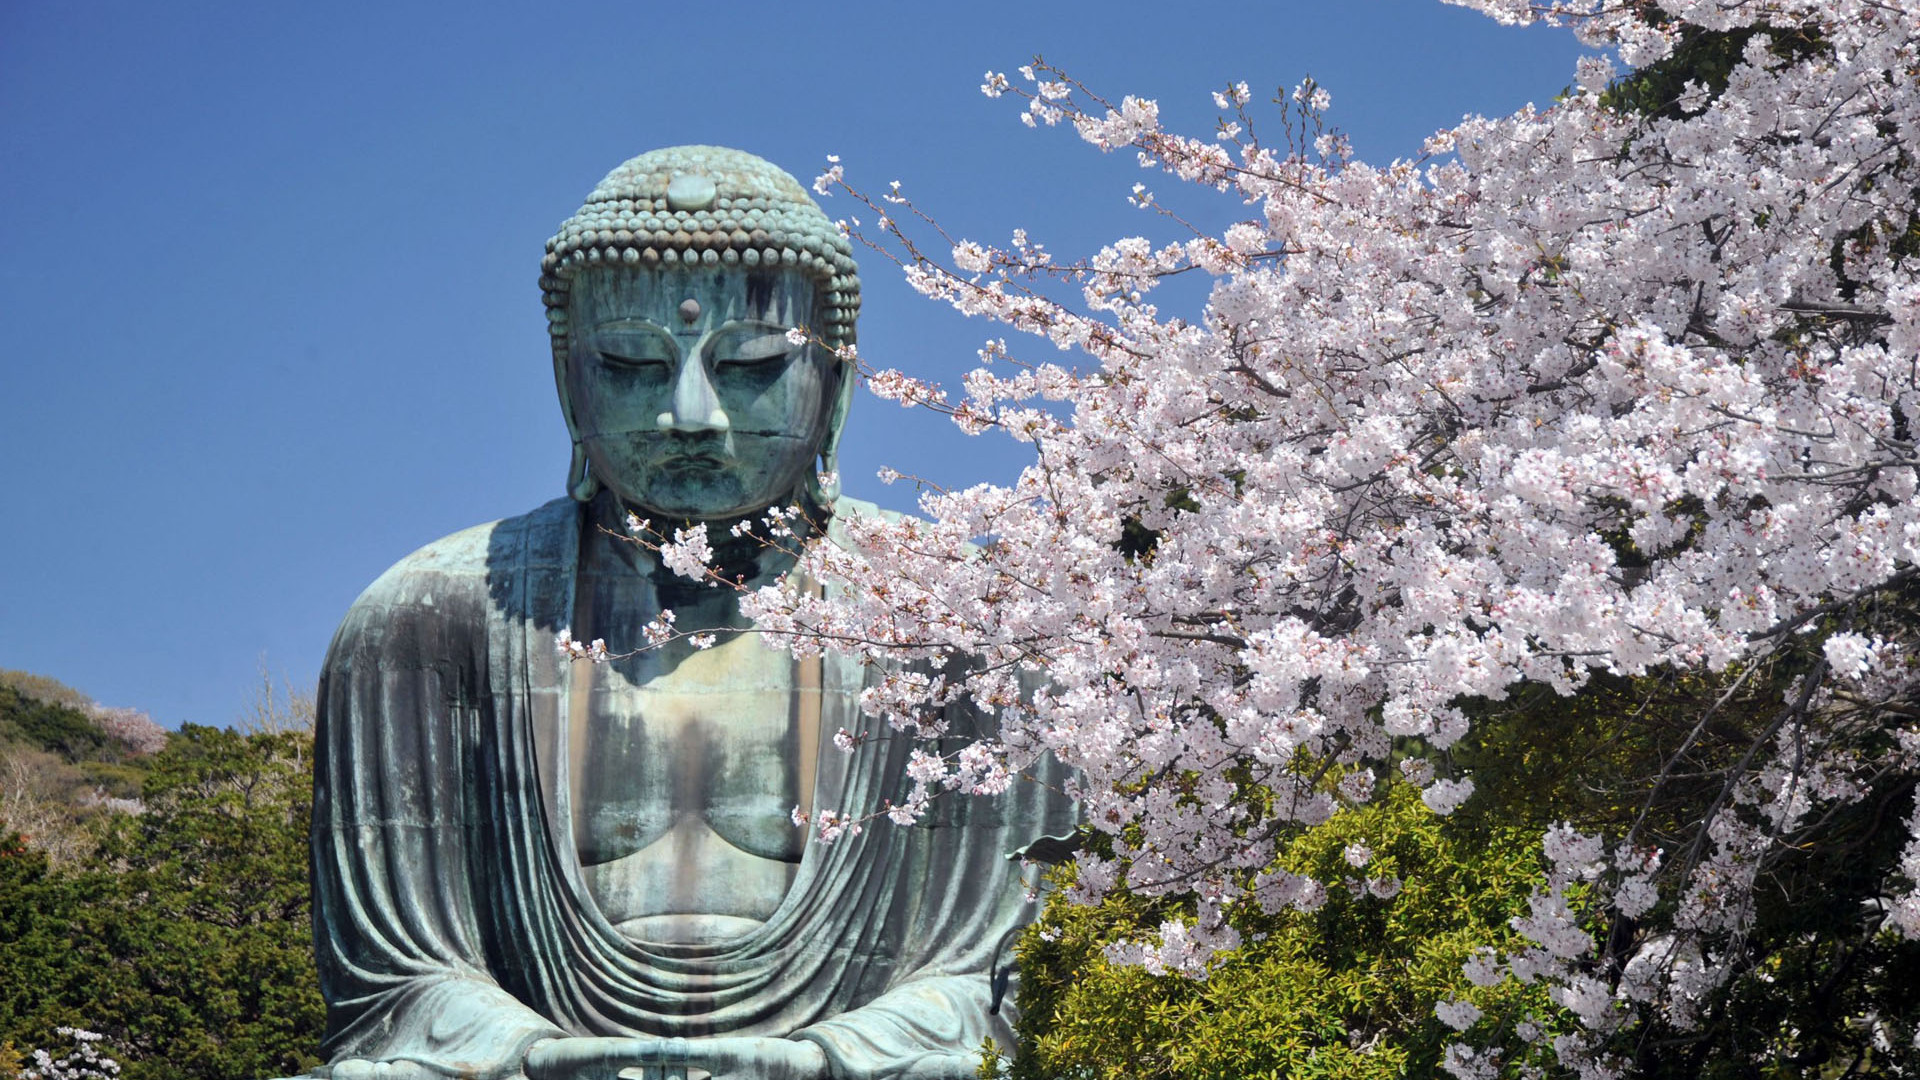 Der große Buddha von Kamakura Kotoku-in